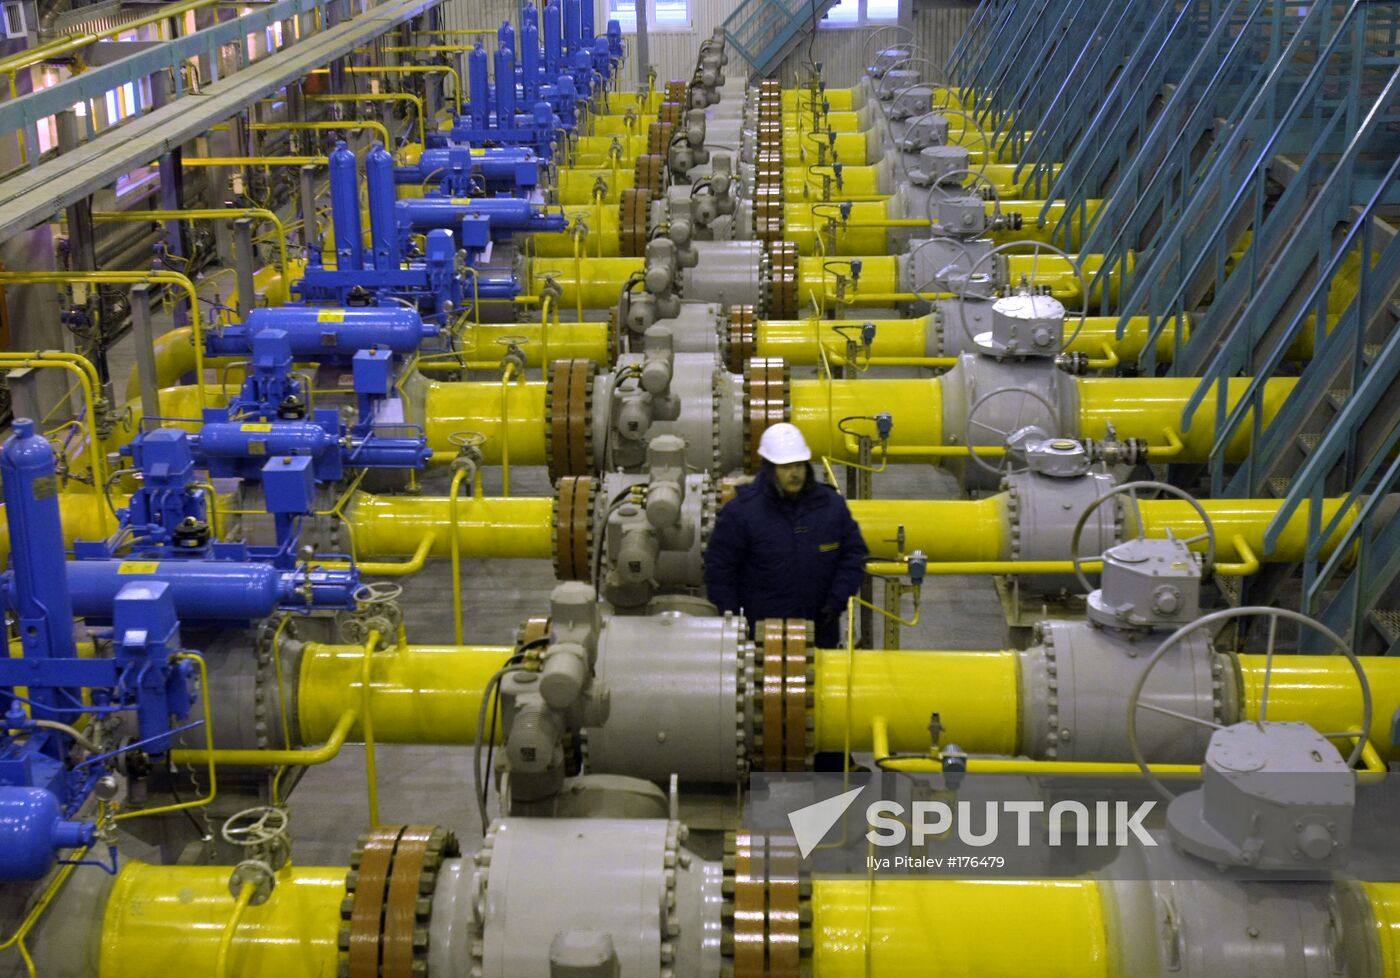 Yuzhno-Russkoye gas condensate deposit